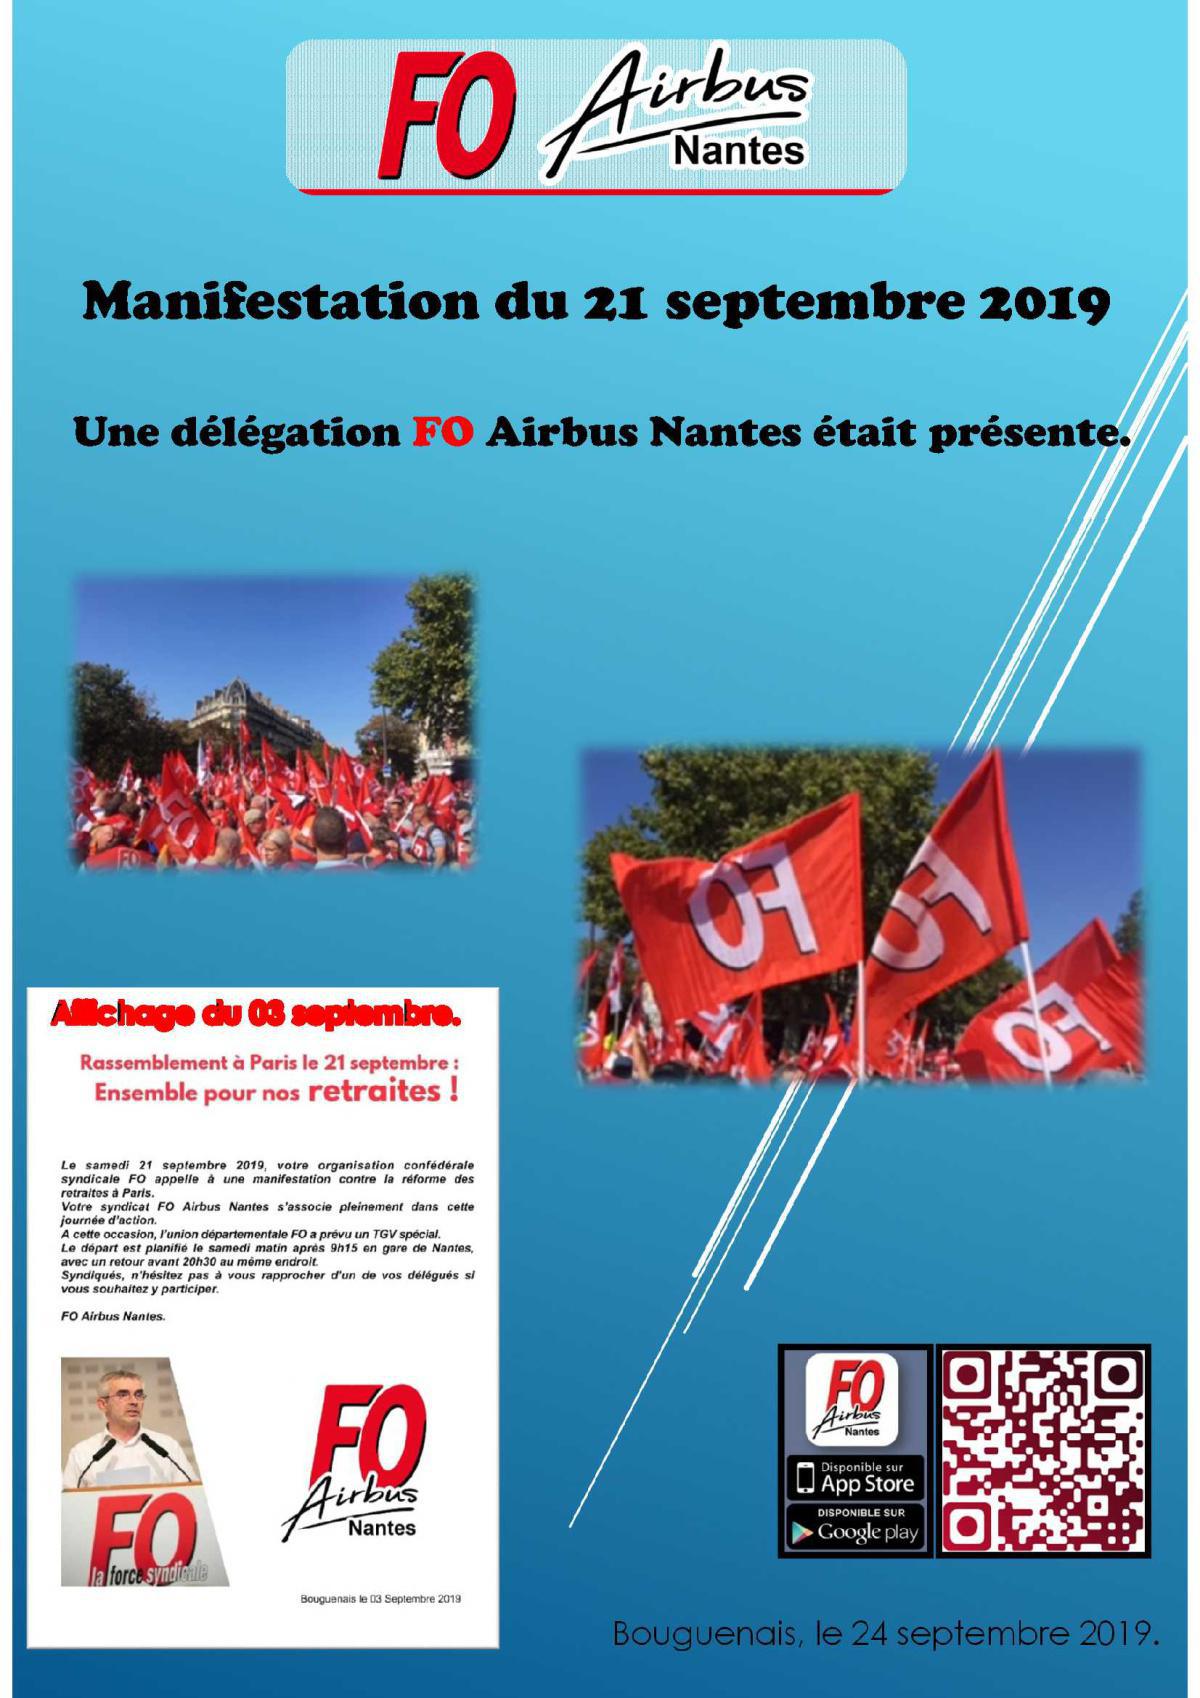 Manifestation du 21 septembre 2019